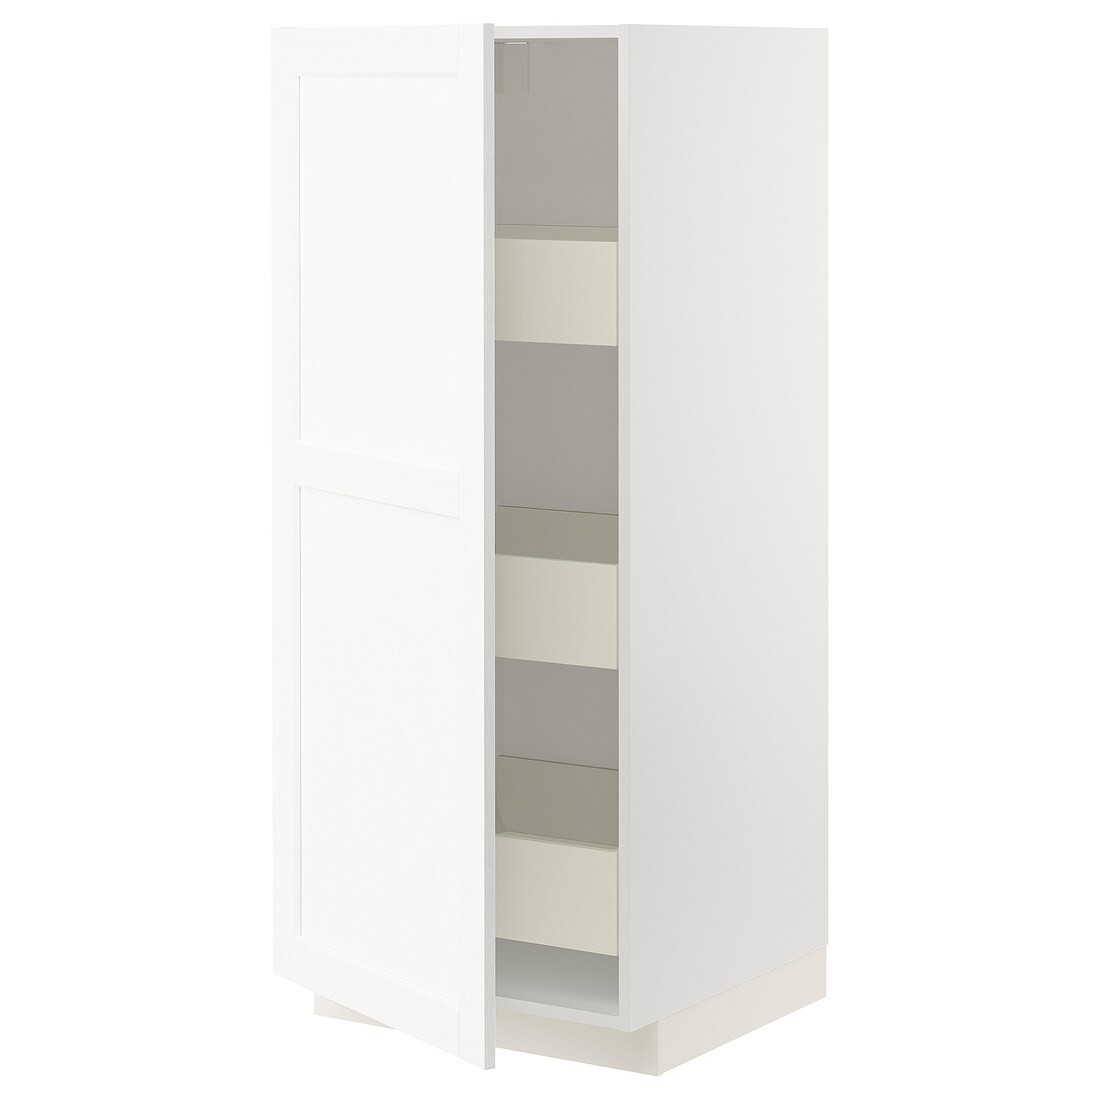 METOD МЕТОД / MAXIMERA МАКСИМЕРА Шкаф высокий с ящиками, белый Enköping / белый имитация дерева, 60x60x140 см